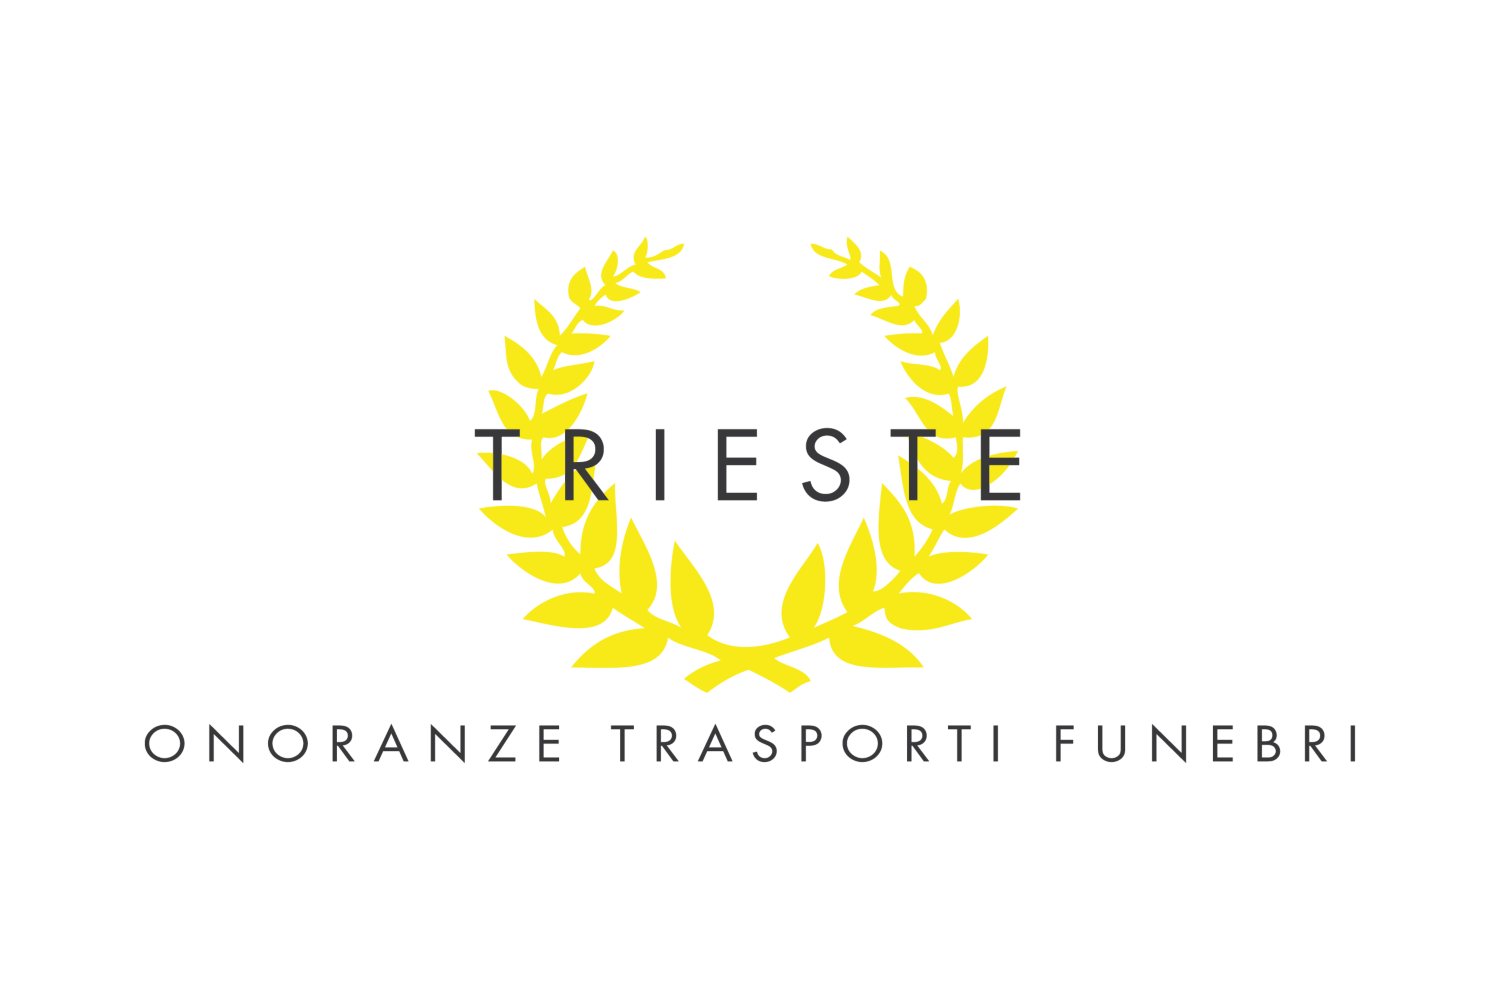 Trieste Onoranze Trasporti Funebri_logo_1500x1000